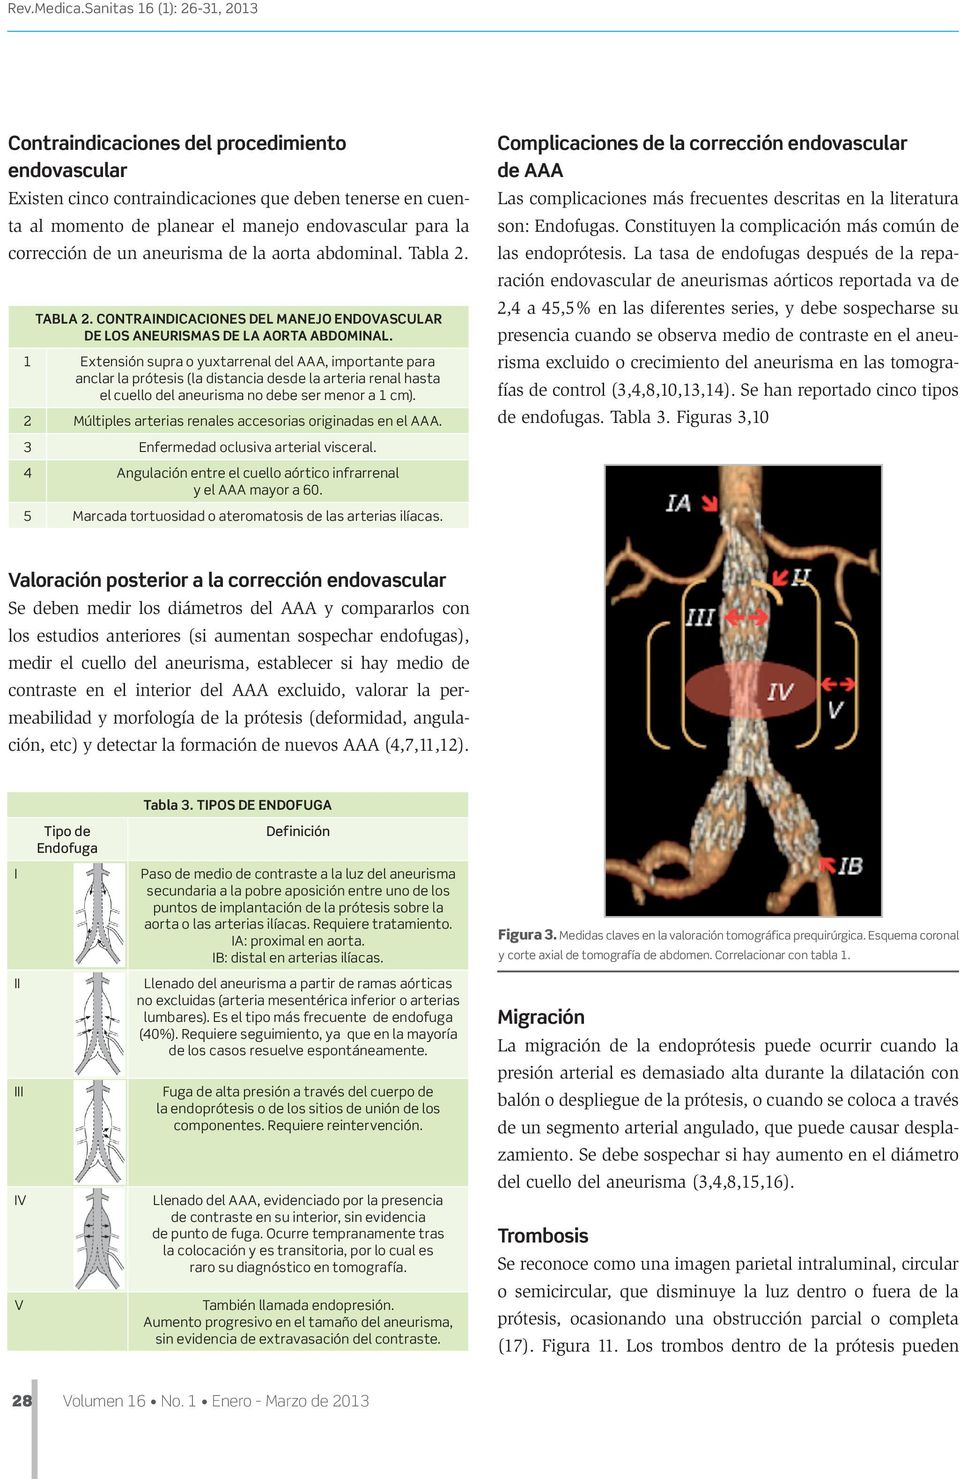 corrección de un aneurisma de la aorta abdominal. Tabla 2. TABlA 2. CONTRAINDICACIONES DEl MANEJO ENDOVASCUlAR DE los ANEURISMAS DE la AORTA ABDOMINAl.